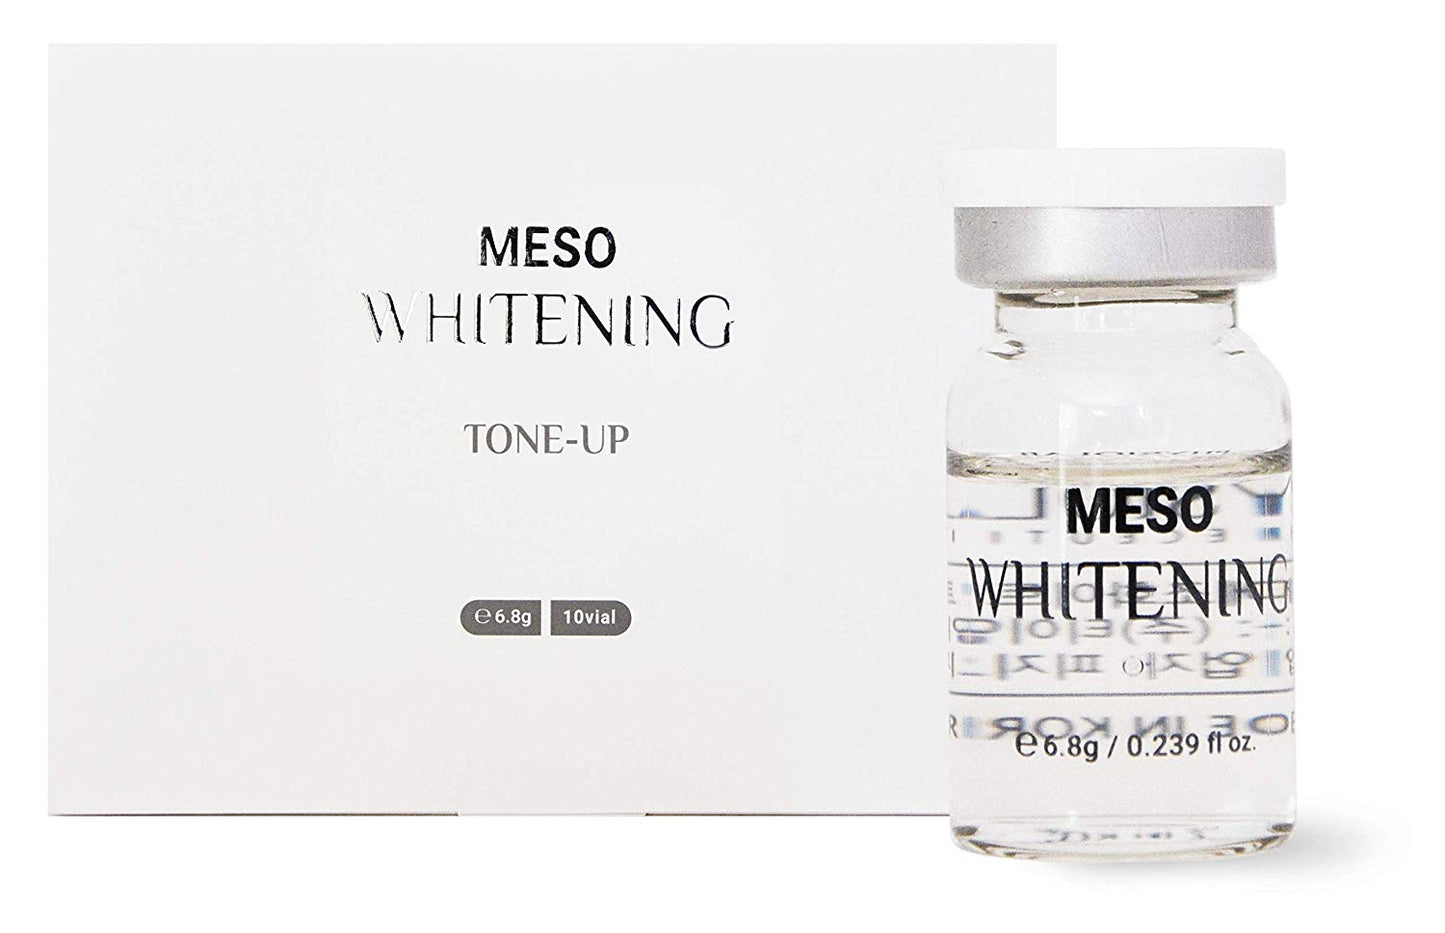 Meso Whitening Serum, Tone Up, 10pc